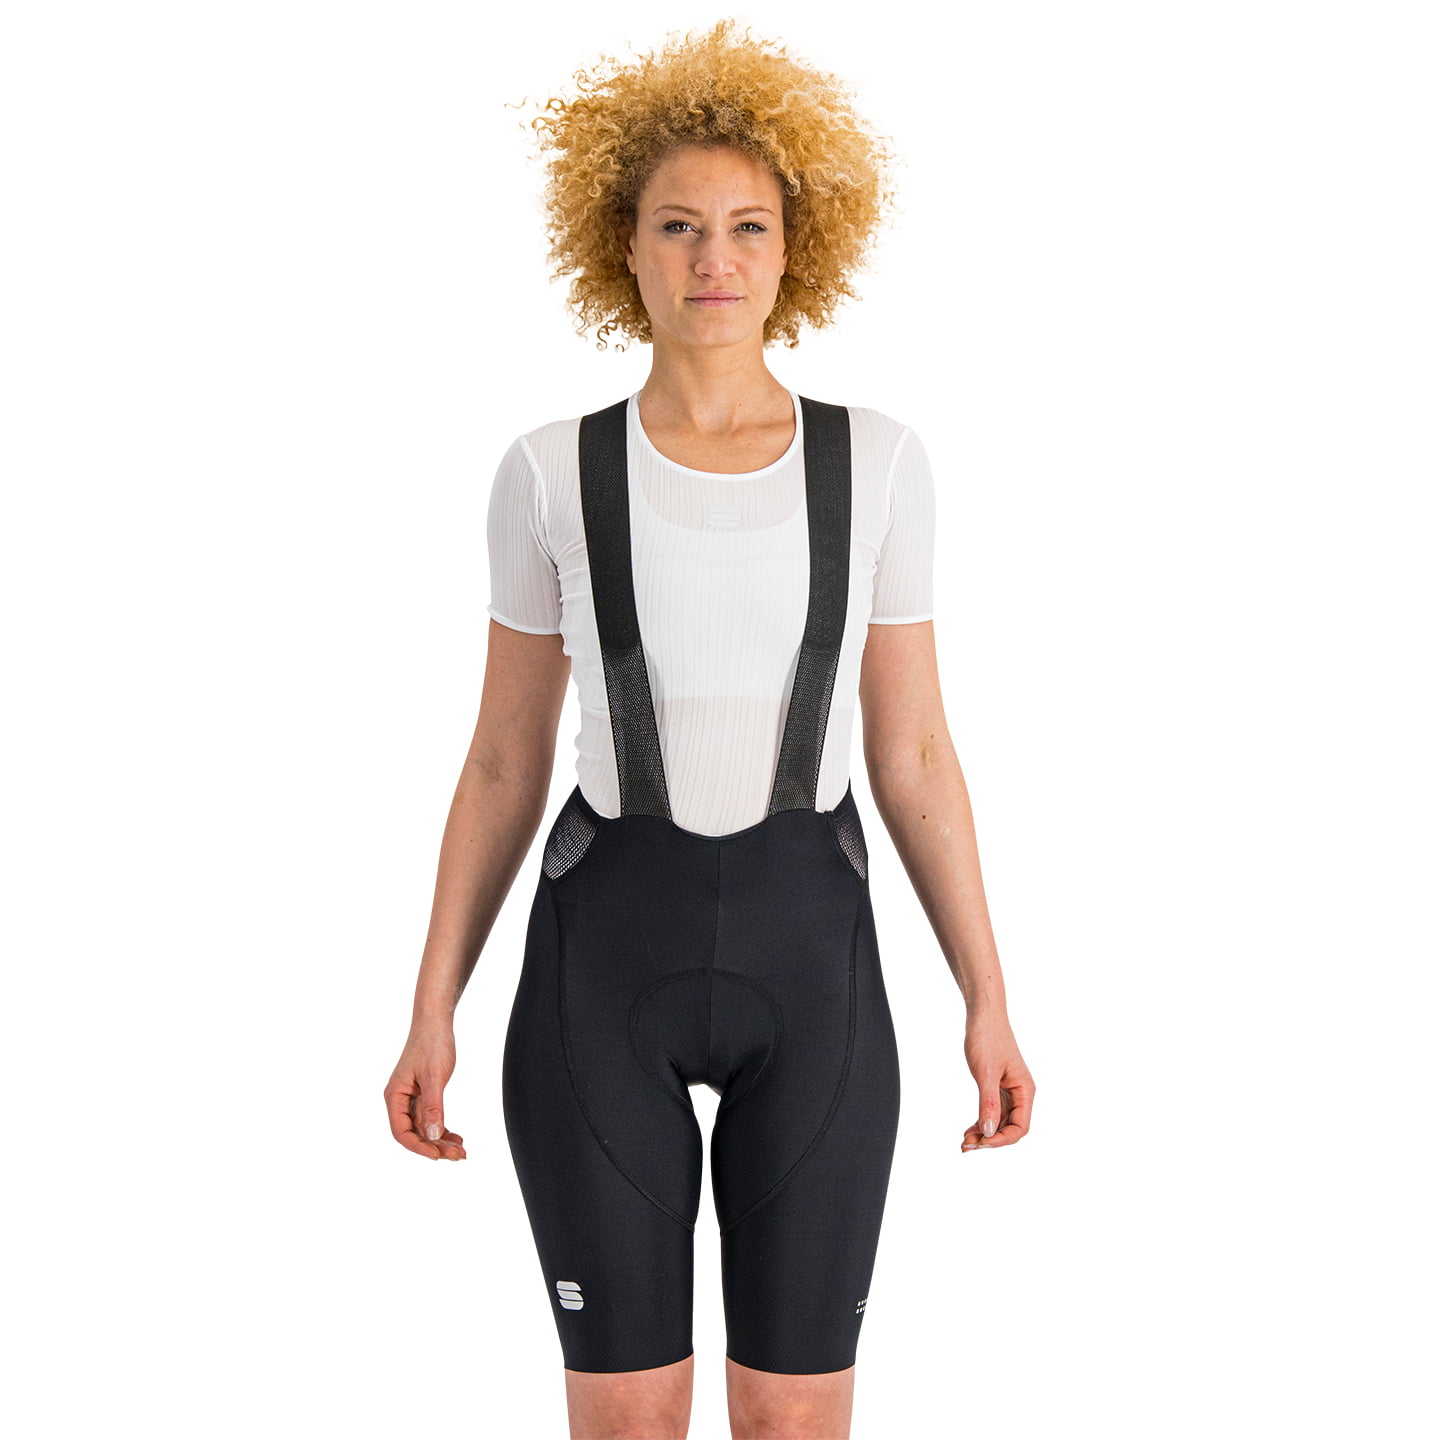 SPORTFUL Classic Women’s Bib Shorts Women’s Bib Shorts, size M, Cycle shorts, Cycling clothing